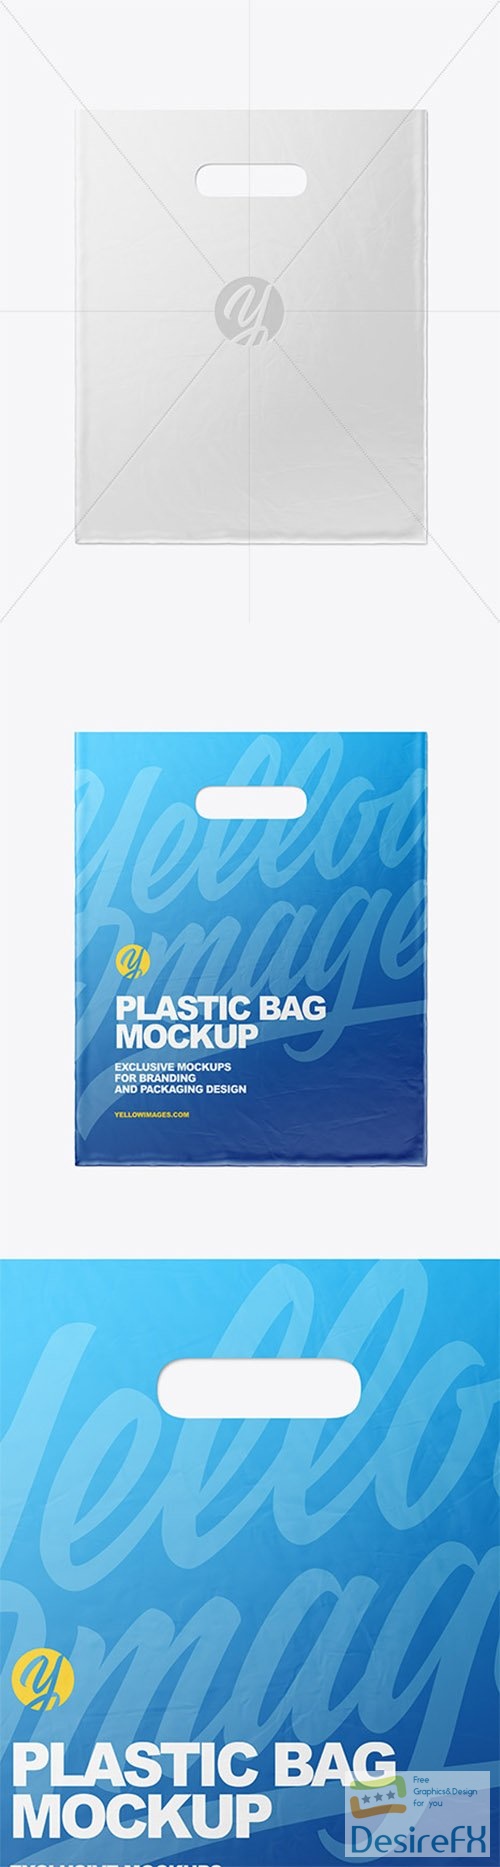 Plastic Carrier Bag Mockup 80480 TIF